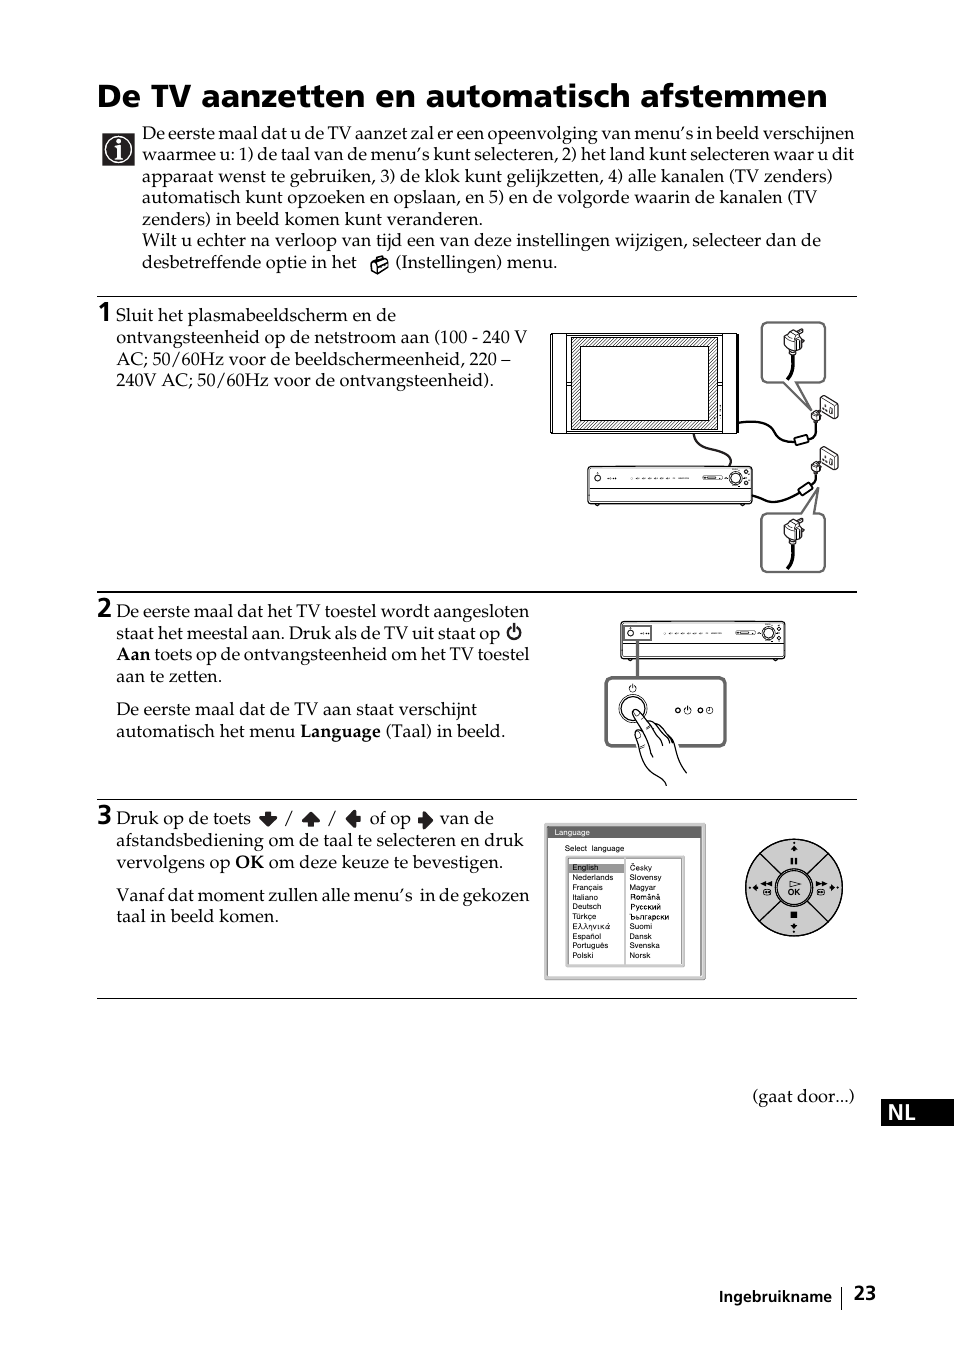 De tv aanzetten en automatisch afstemmen | Sony KE-42MR1 Manuale d'uso | Pagina 99 / 302